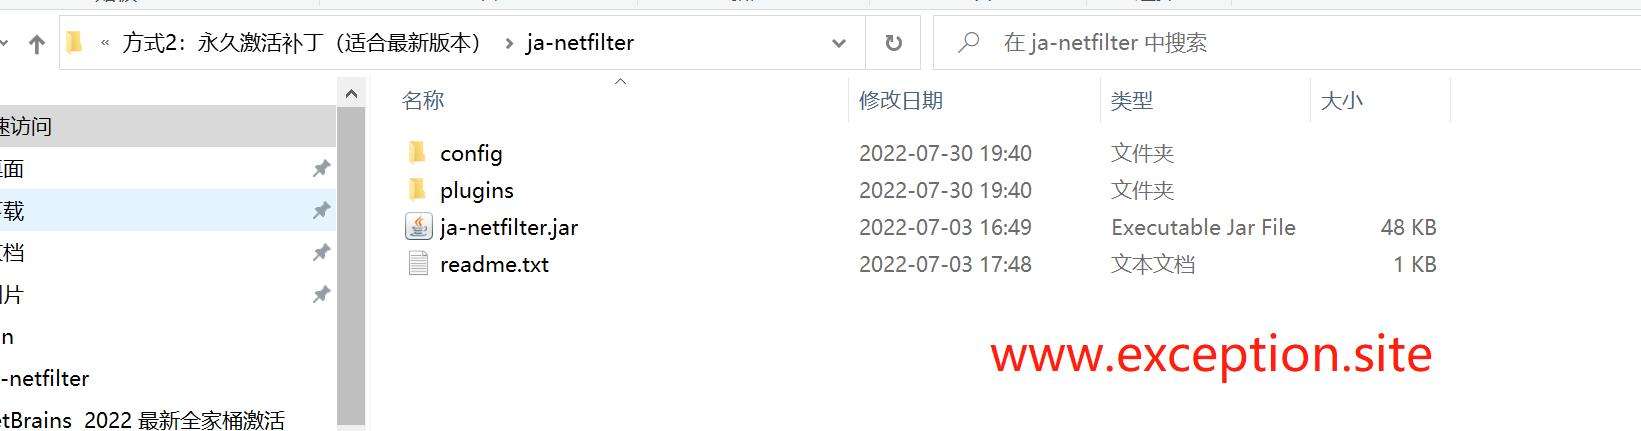 Webstorm 2022.3.1 激活脚本文件夹